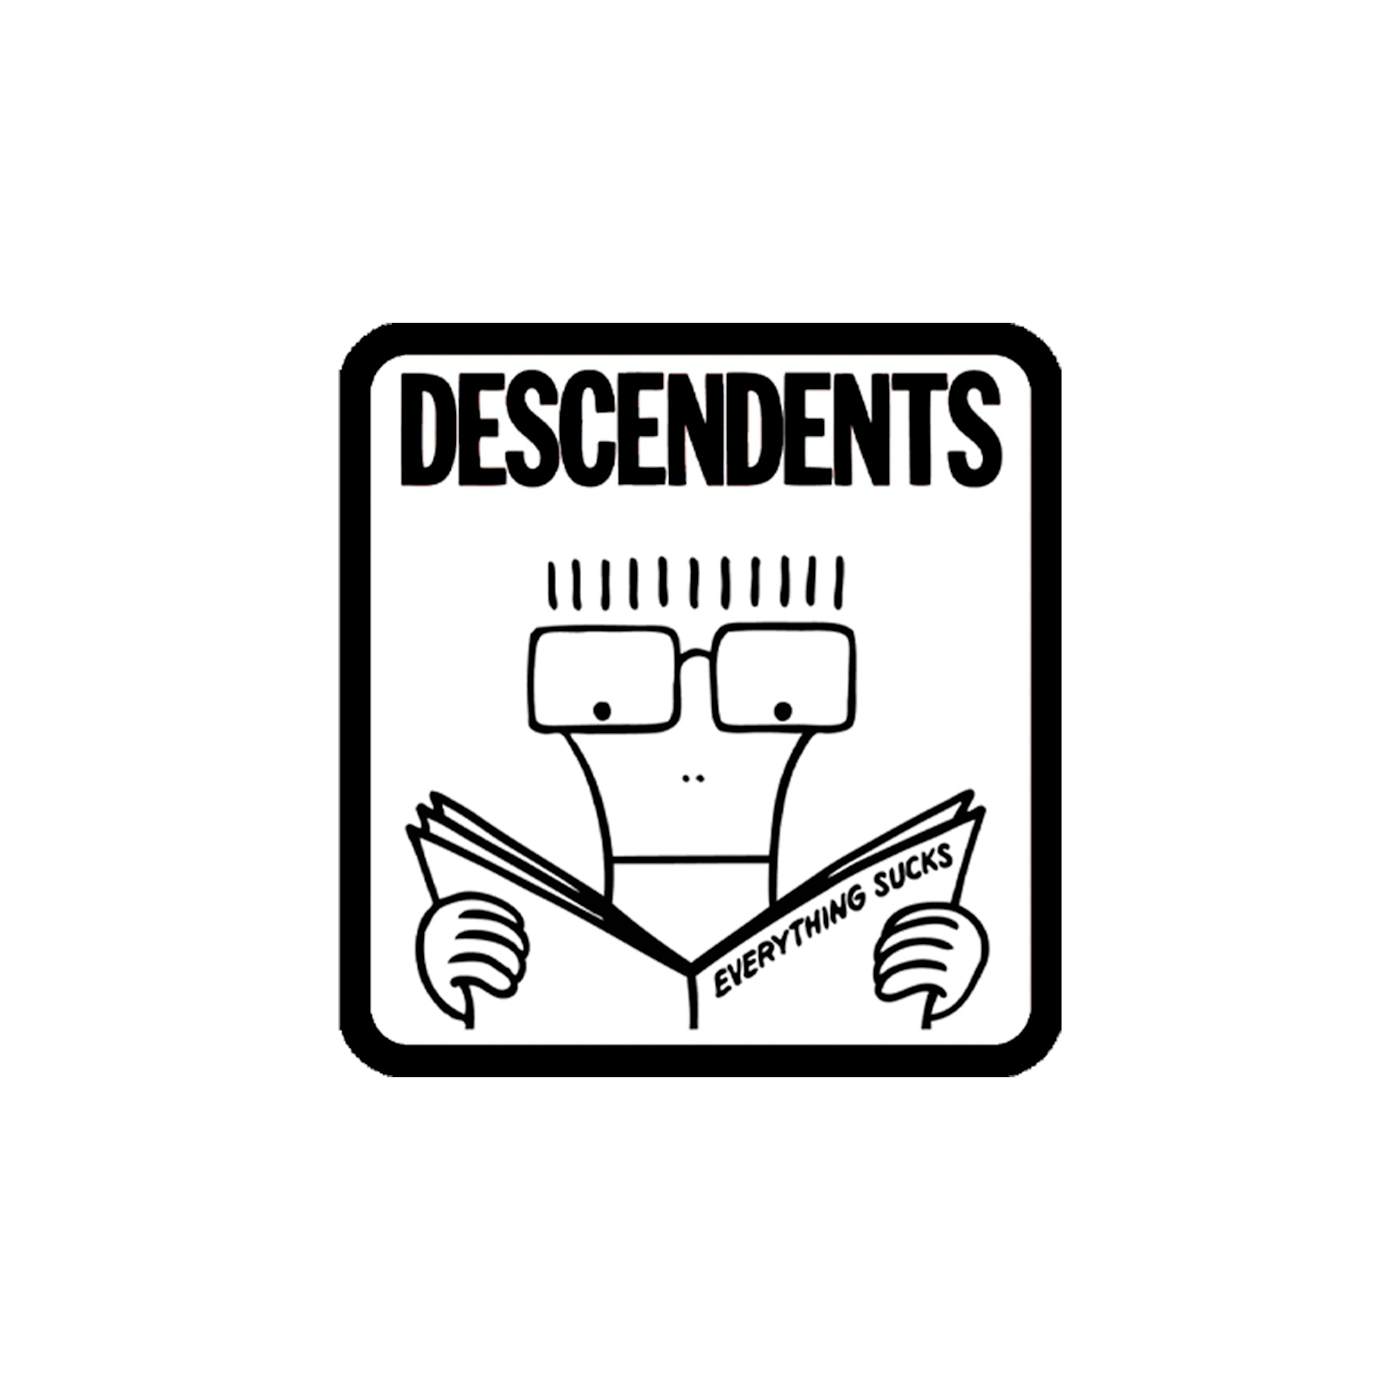 Descendents Everything Sucks Sticker